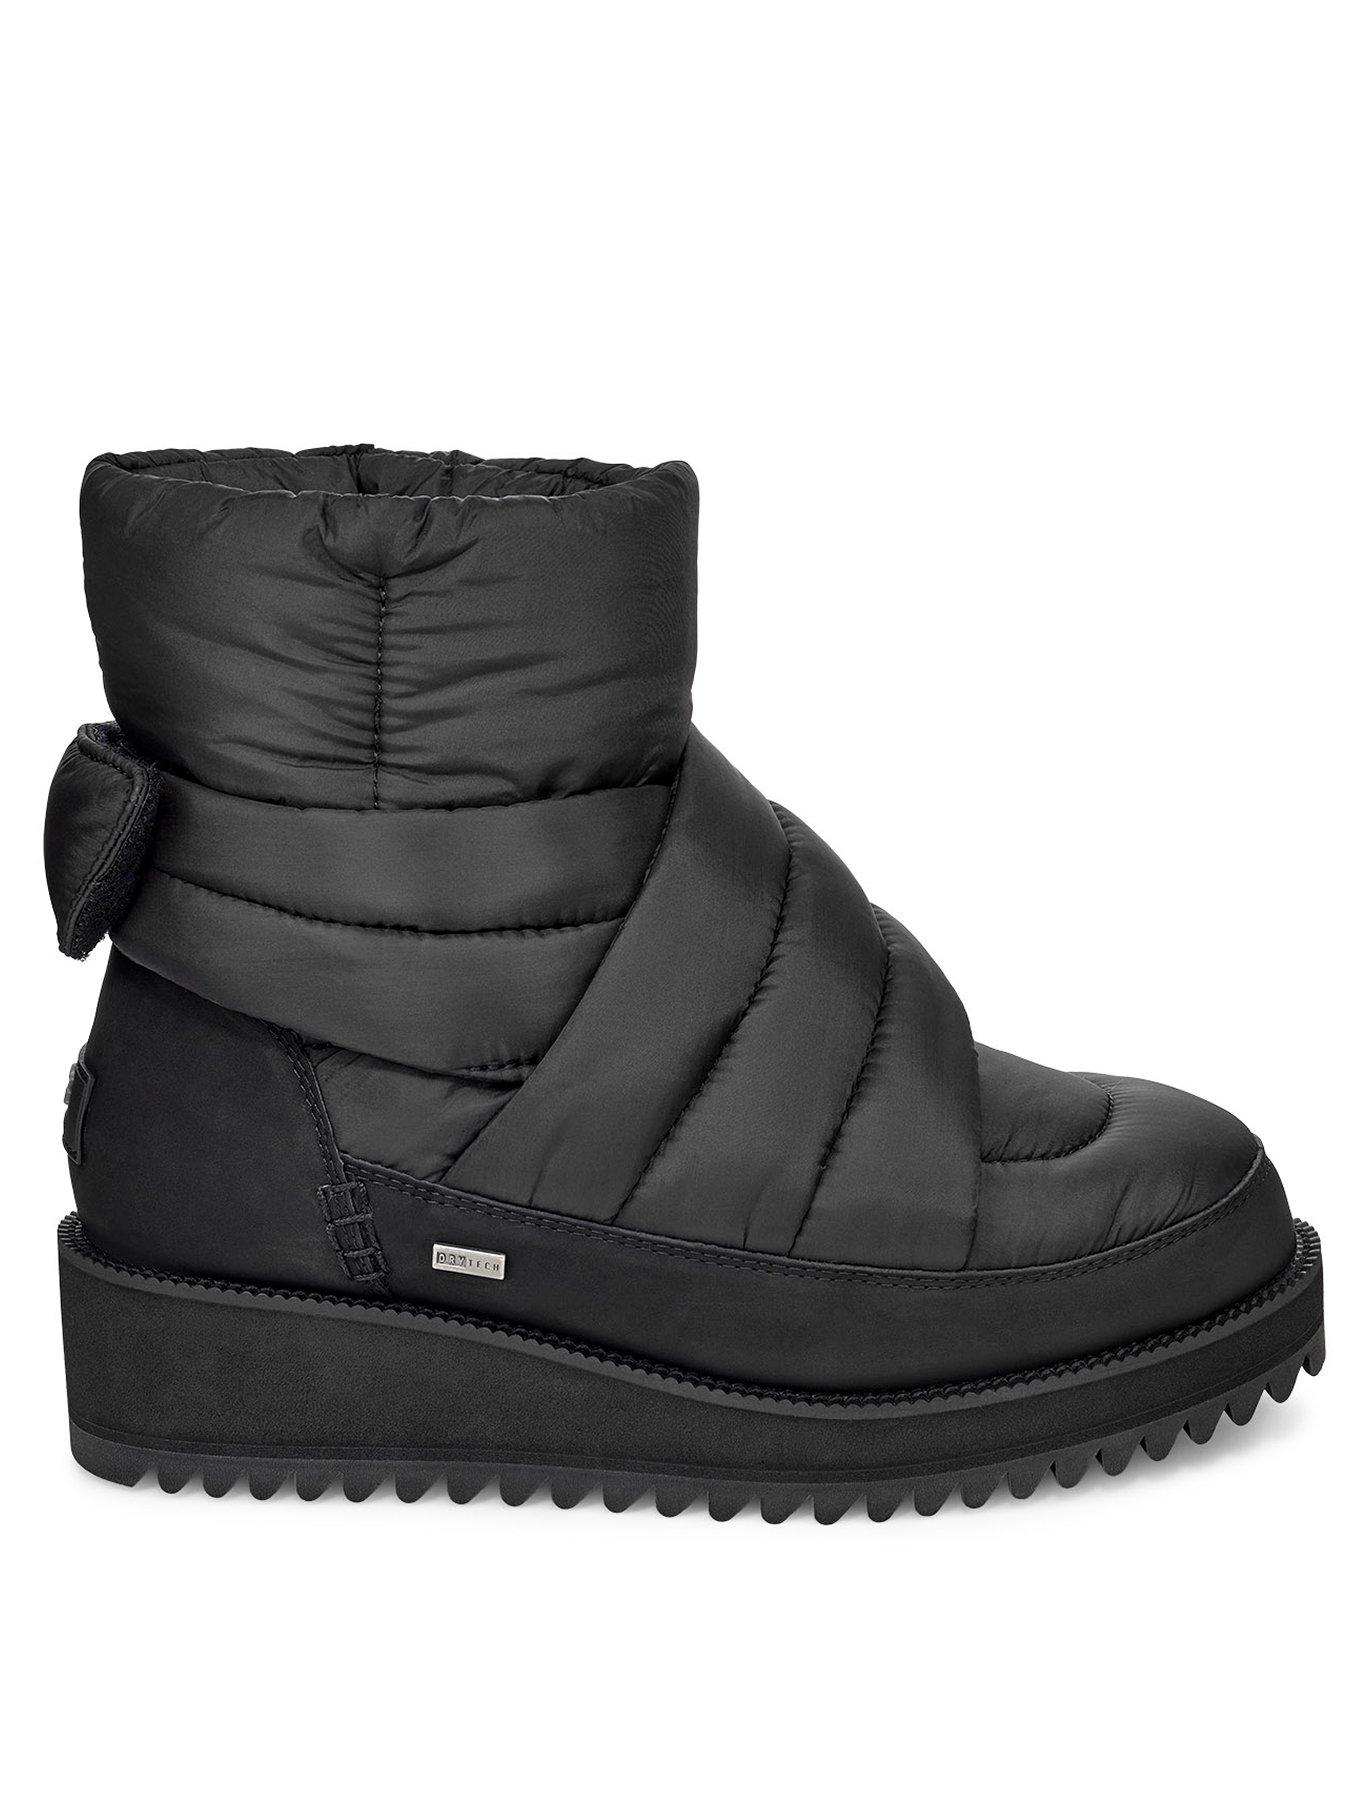 black ankle ugg boots uk